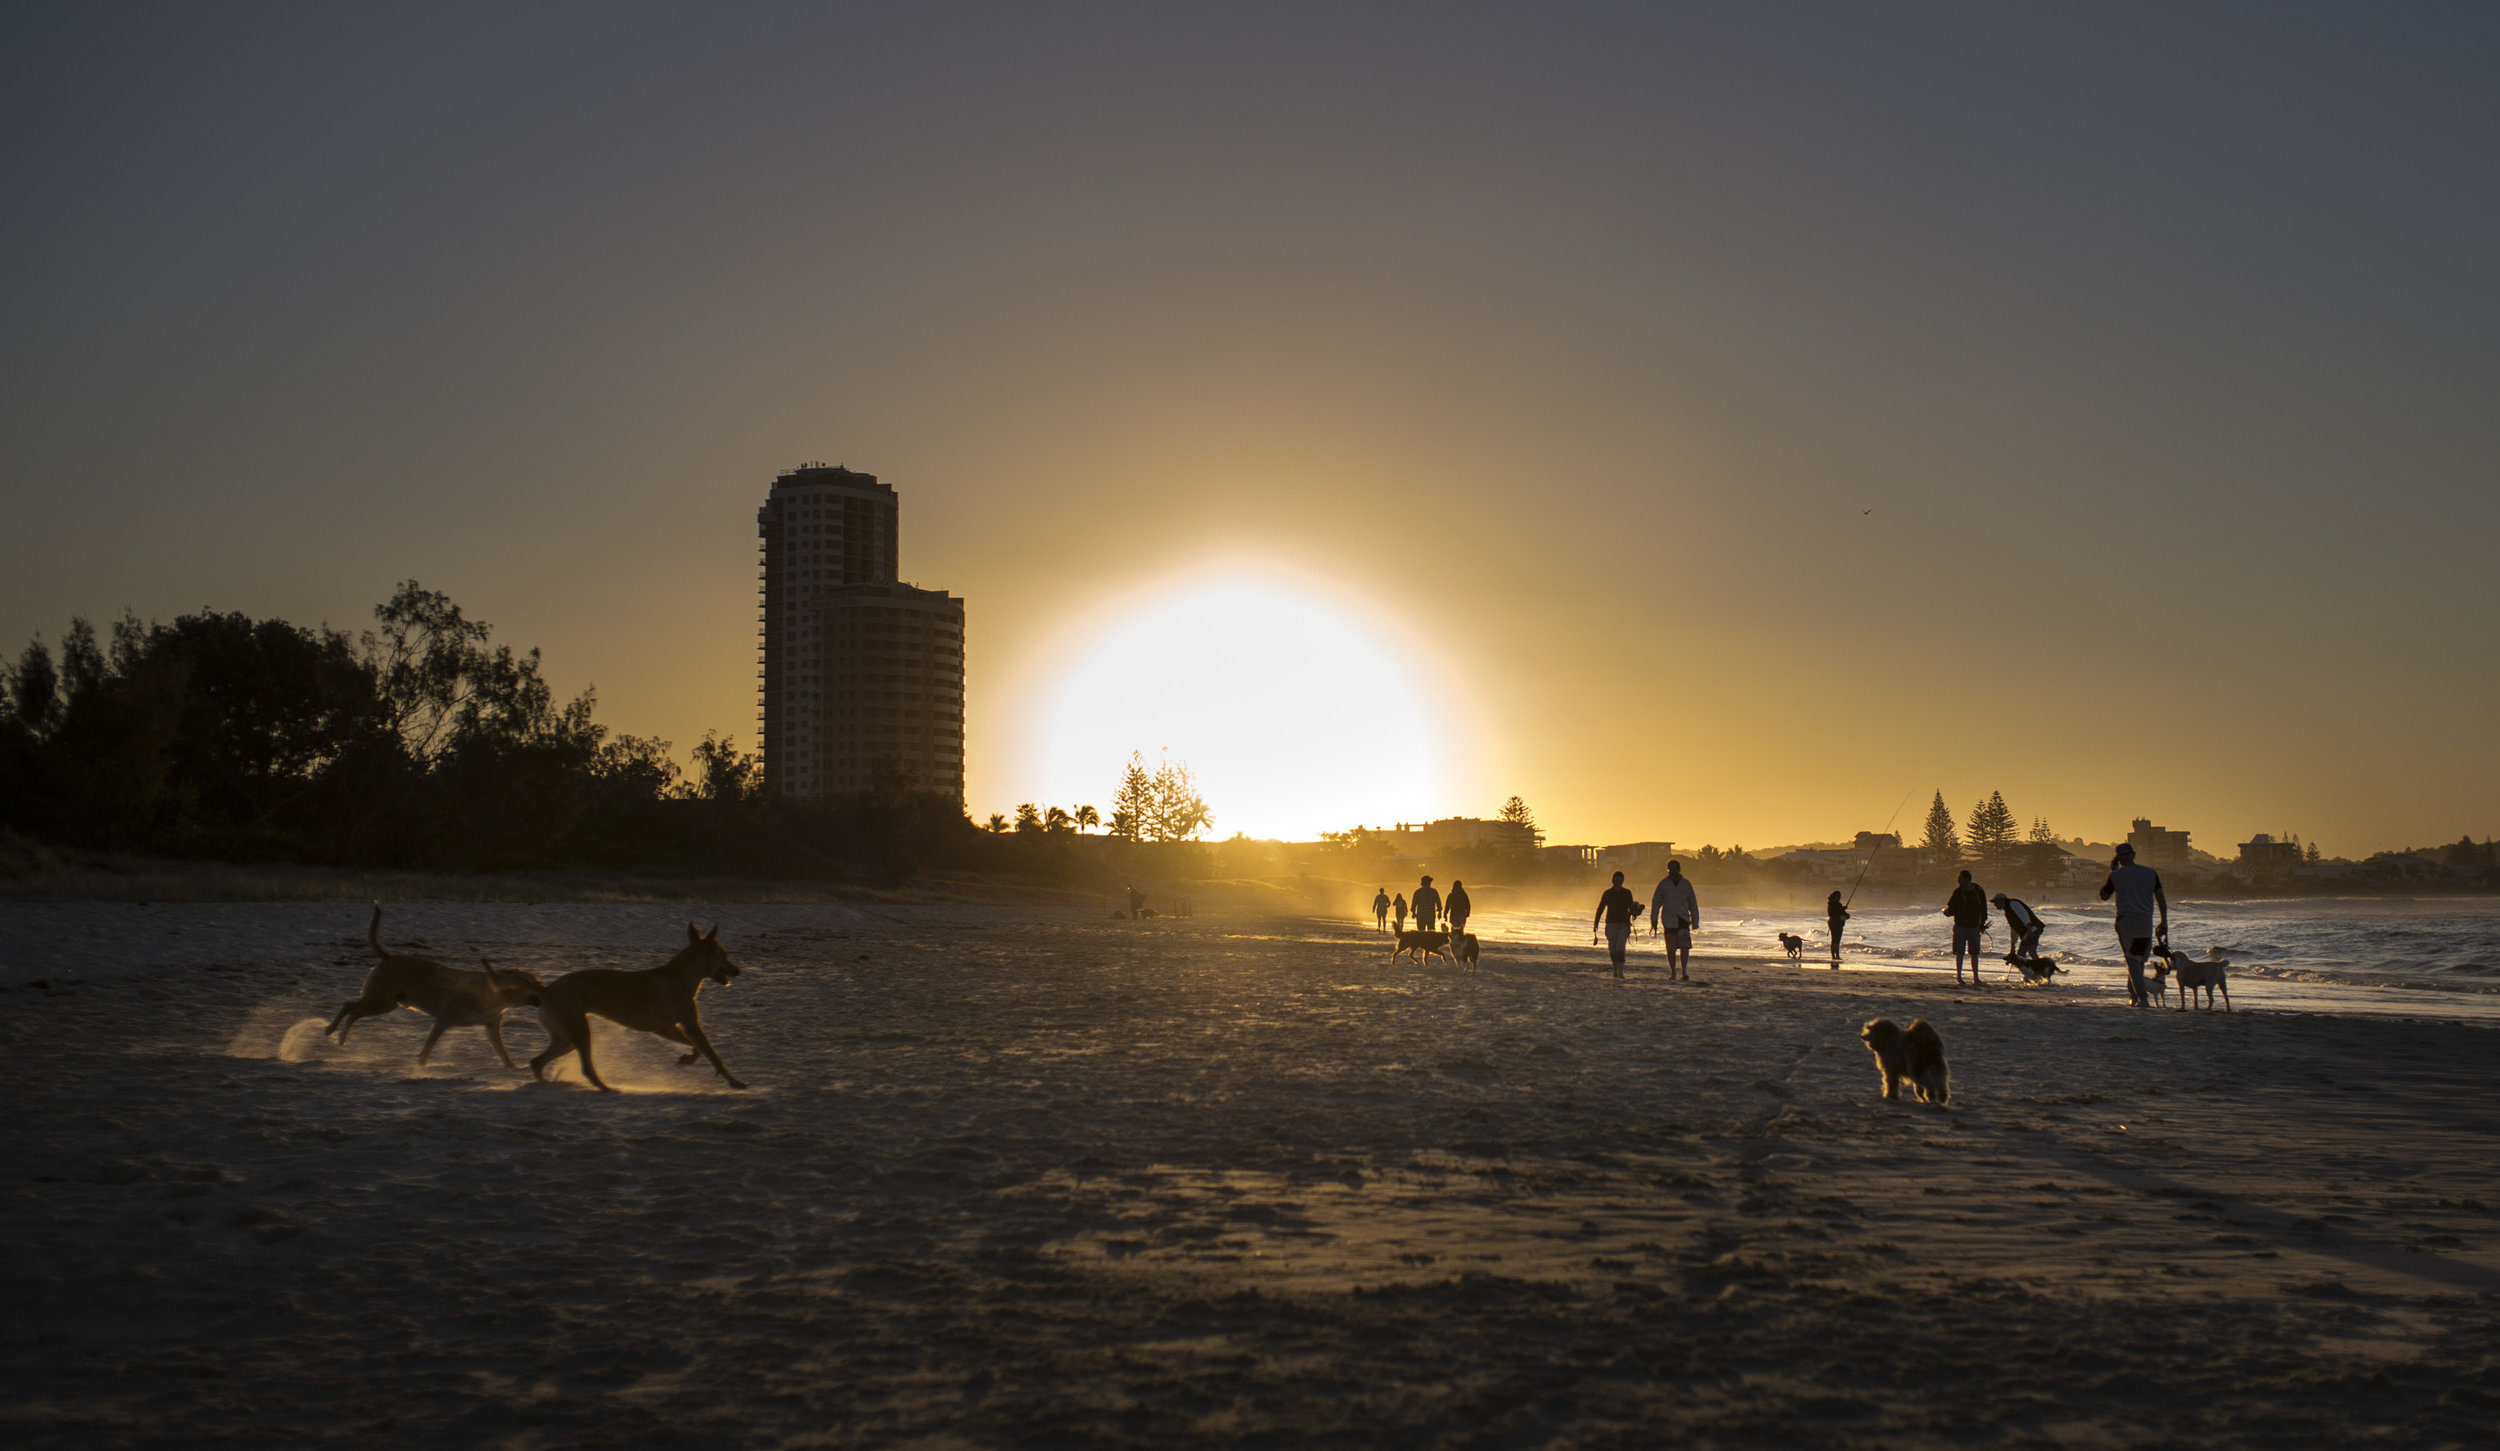  Dog friendly Beach, Palm Beach,Gold Coast, Qld, Australia 